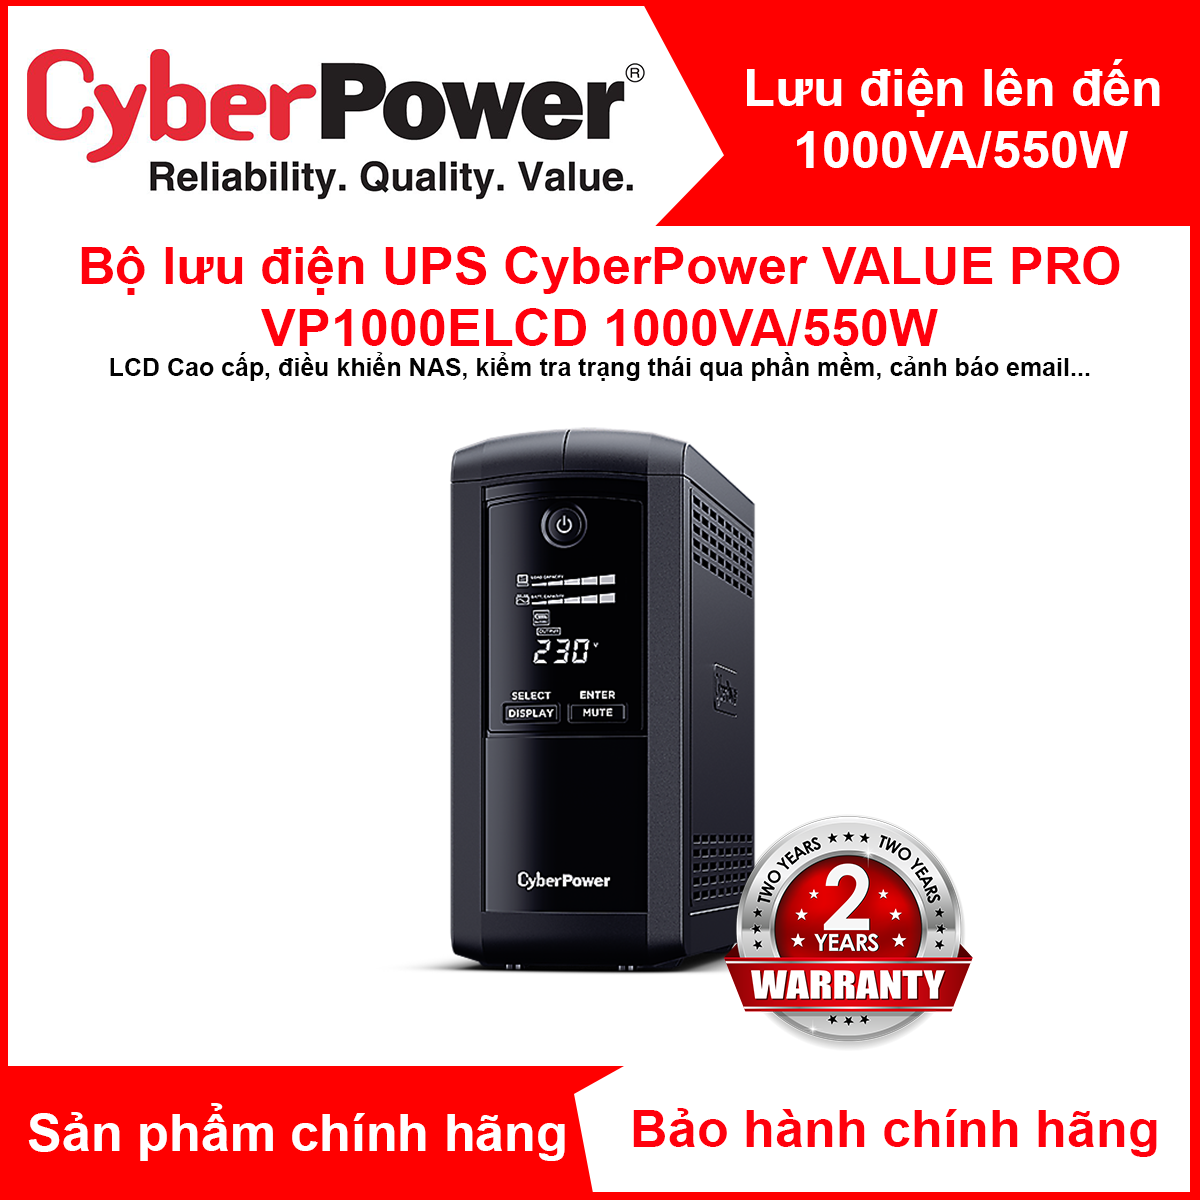 Bộ lưu điện UPS CyberPower VALUE Pro VP1000ELCD - 1000VA/550W - Tích hợp điều khiển Nas, Màn hình hiển thị LCD, dòng sản phẩm cao cấp - Hàng Chính Hãng